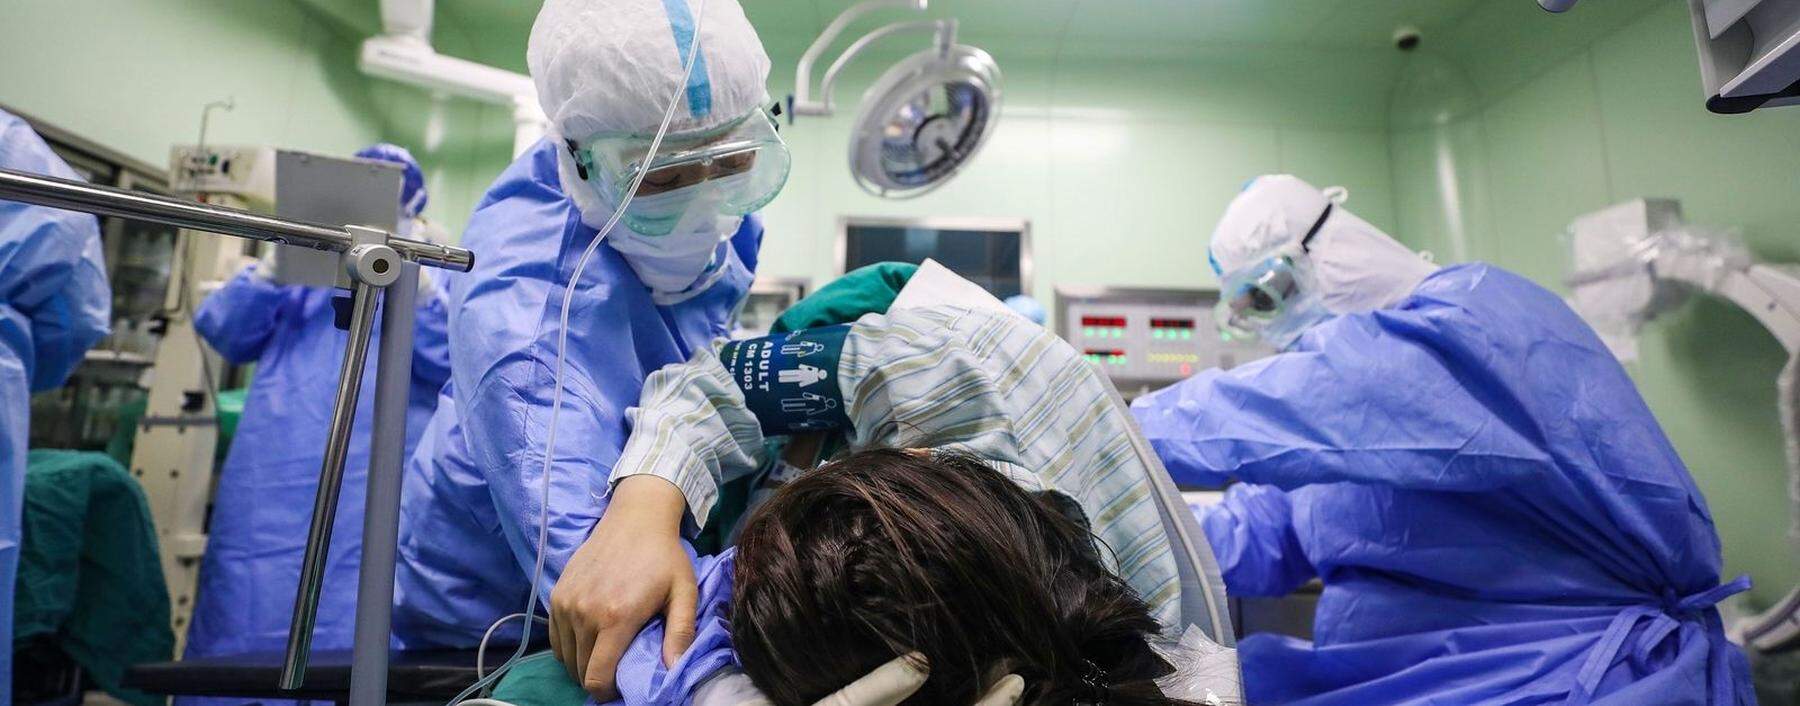 Eine Corona-Patientin im einstigen Virus-Epizentrum Wuhan: Mittlerweile gibt es im Ausland mehr Fälle als in China.